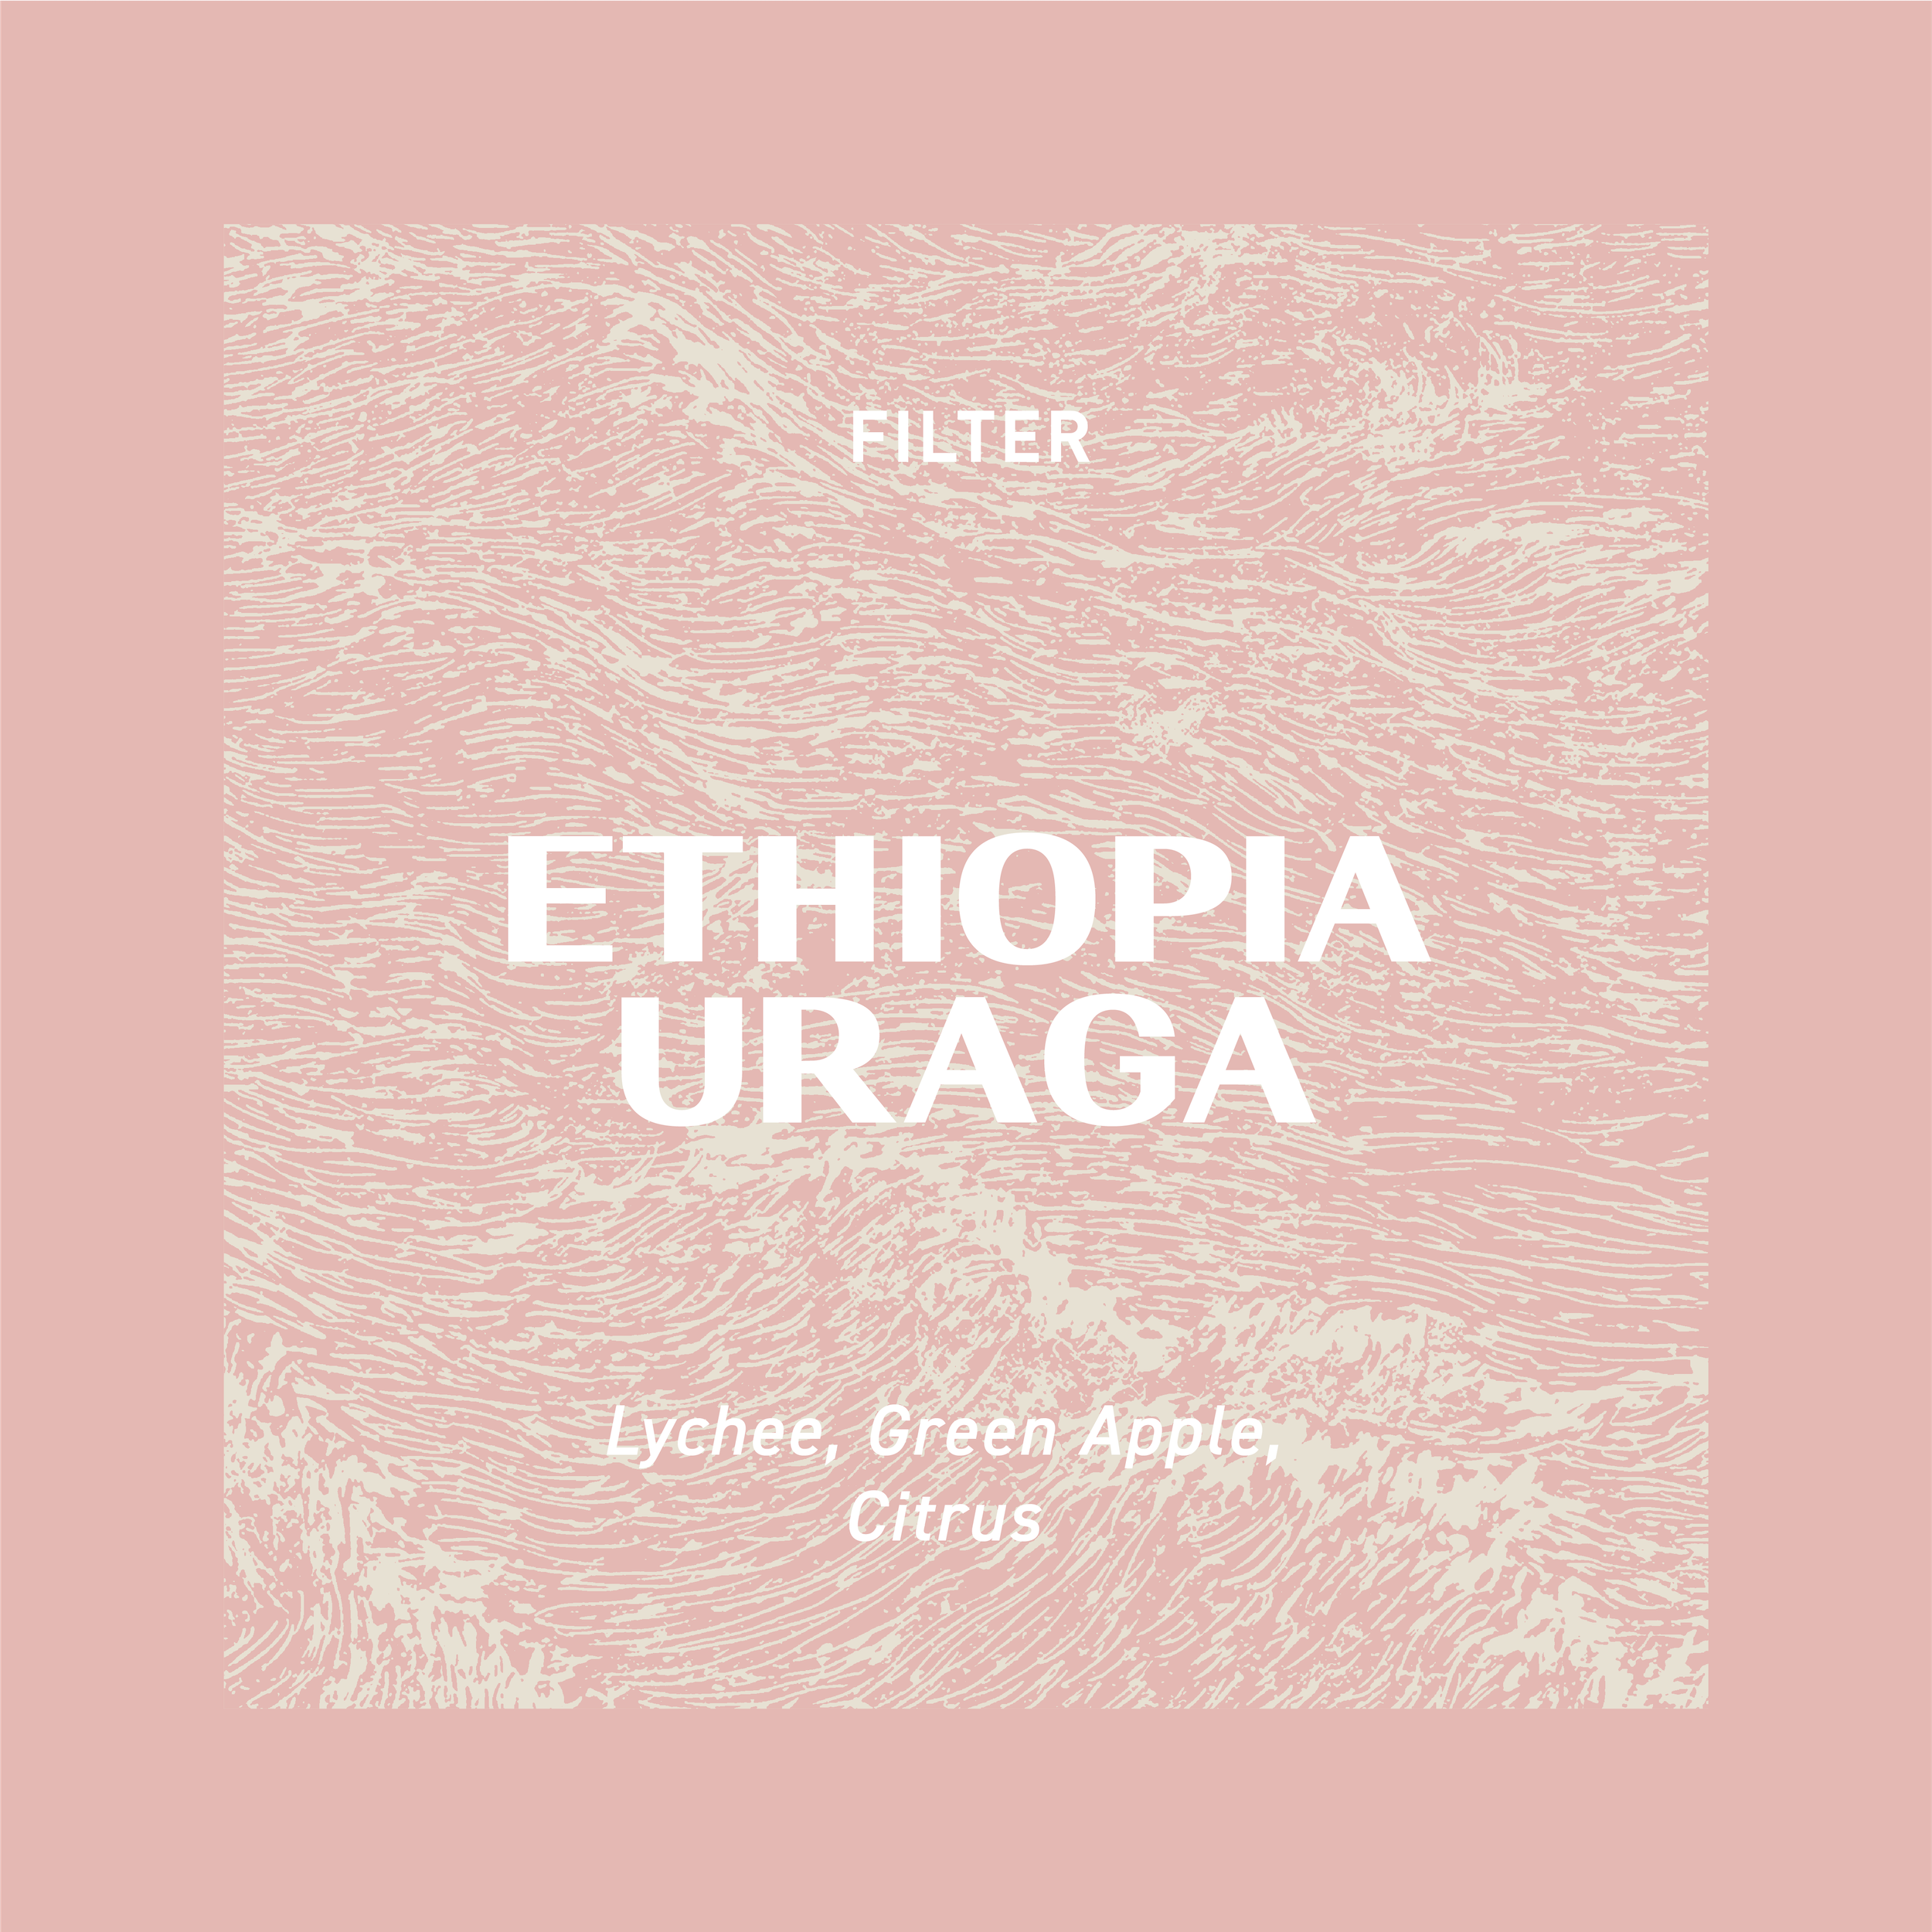 FILTER - ETHIOPIA URAGA